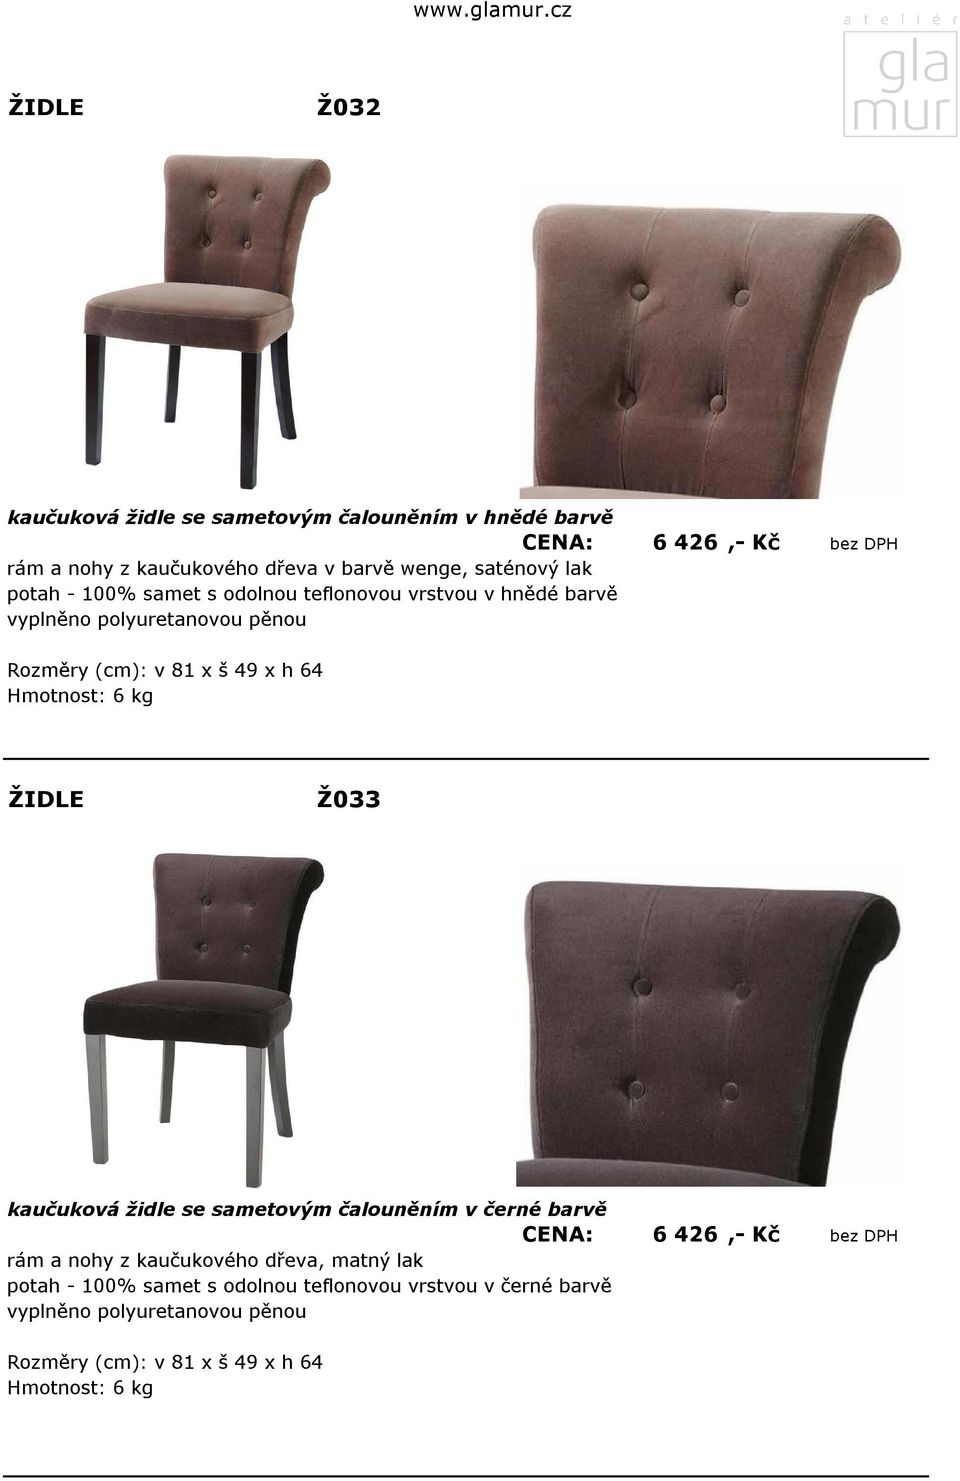 Hmotnost: 6 kg Ž033 kaučuková židle se sametovým čalouněním v černé barvě CENA: 6 426,- Kč bez DPH rám a nohy z